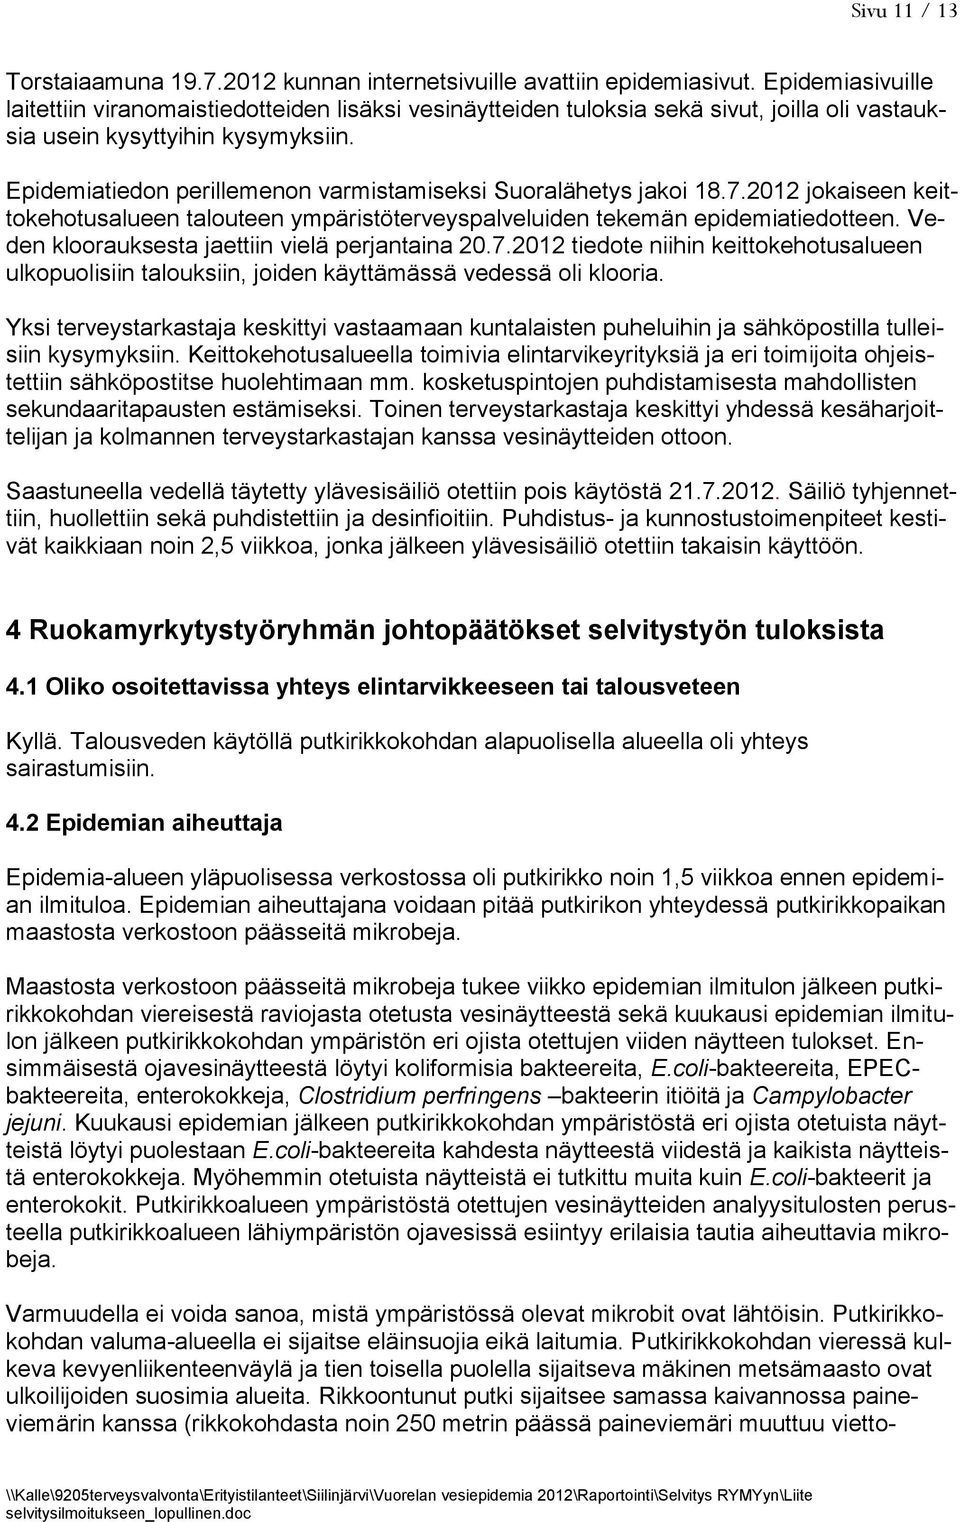 Epidemiatiedon perillemenon varmistamiseksi Suoralähetys jakoi 18.7.2012 jokaiseen keittokehotusalueen talouteen ympäristöterveyspalveluiden tekemän epidemiatiedotteen.